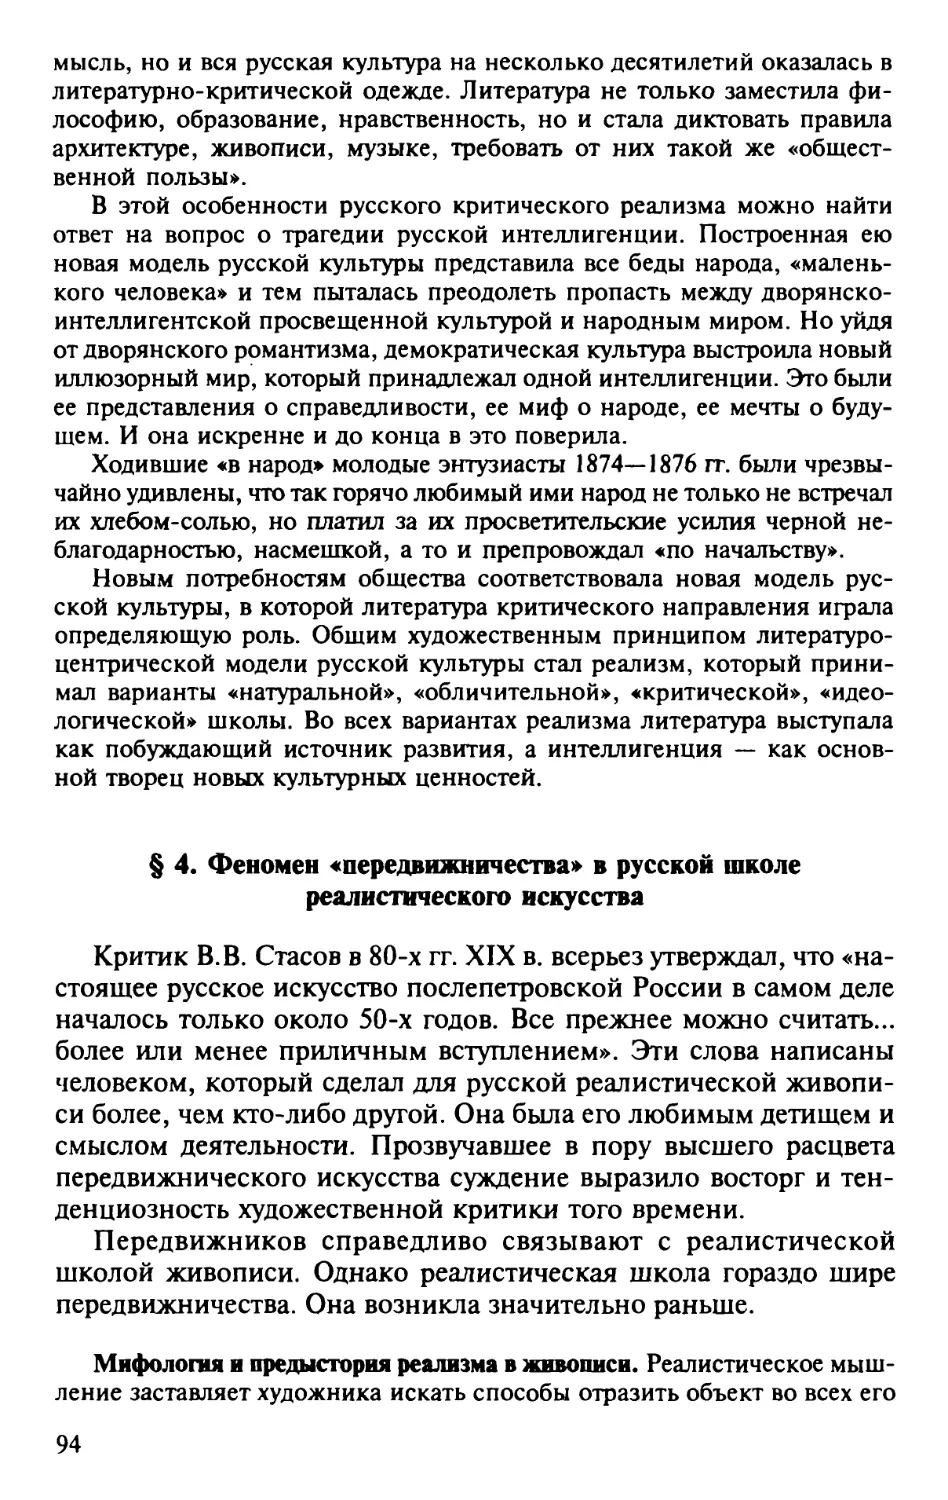 § 4. Феномен «передвижничества» в русской школе реалистического искусства